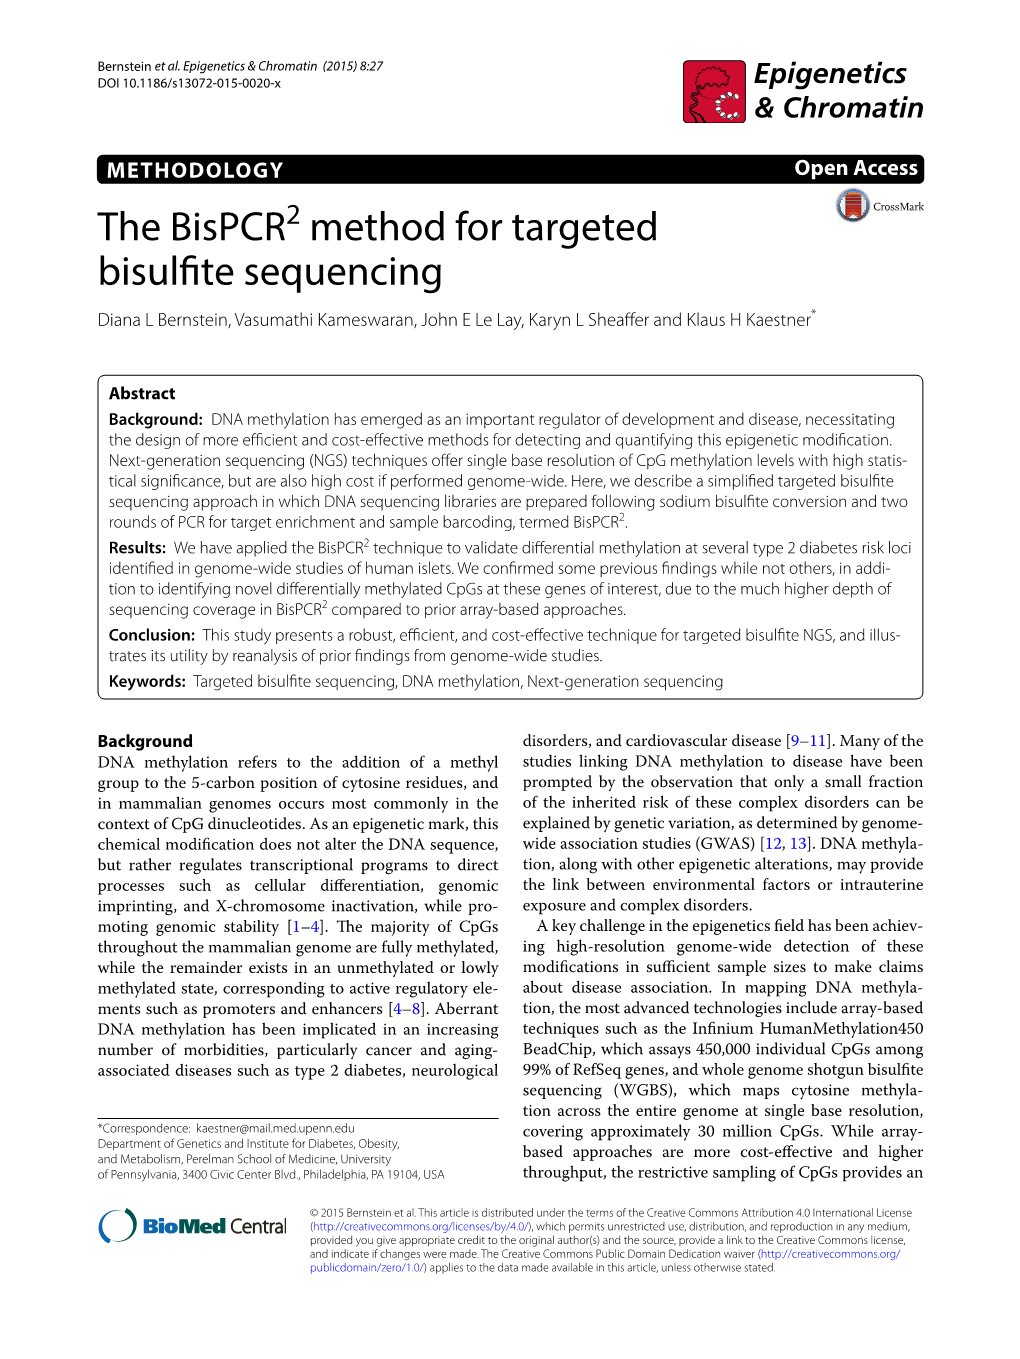 The Bispcr2 Method for Targeted Bisulfite Sequencing Diana L Bernstein, Vasumathi Kameswaran, John E Le Lay, Karyn L Sheaffer and Klaus H Kaestner*